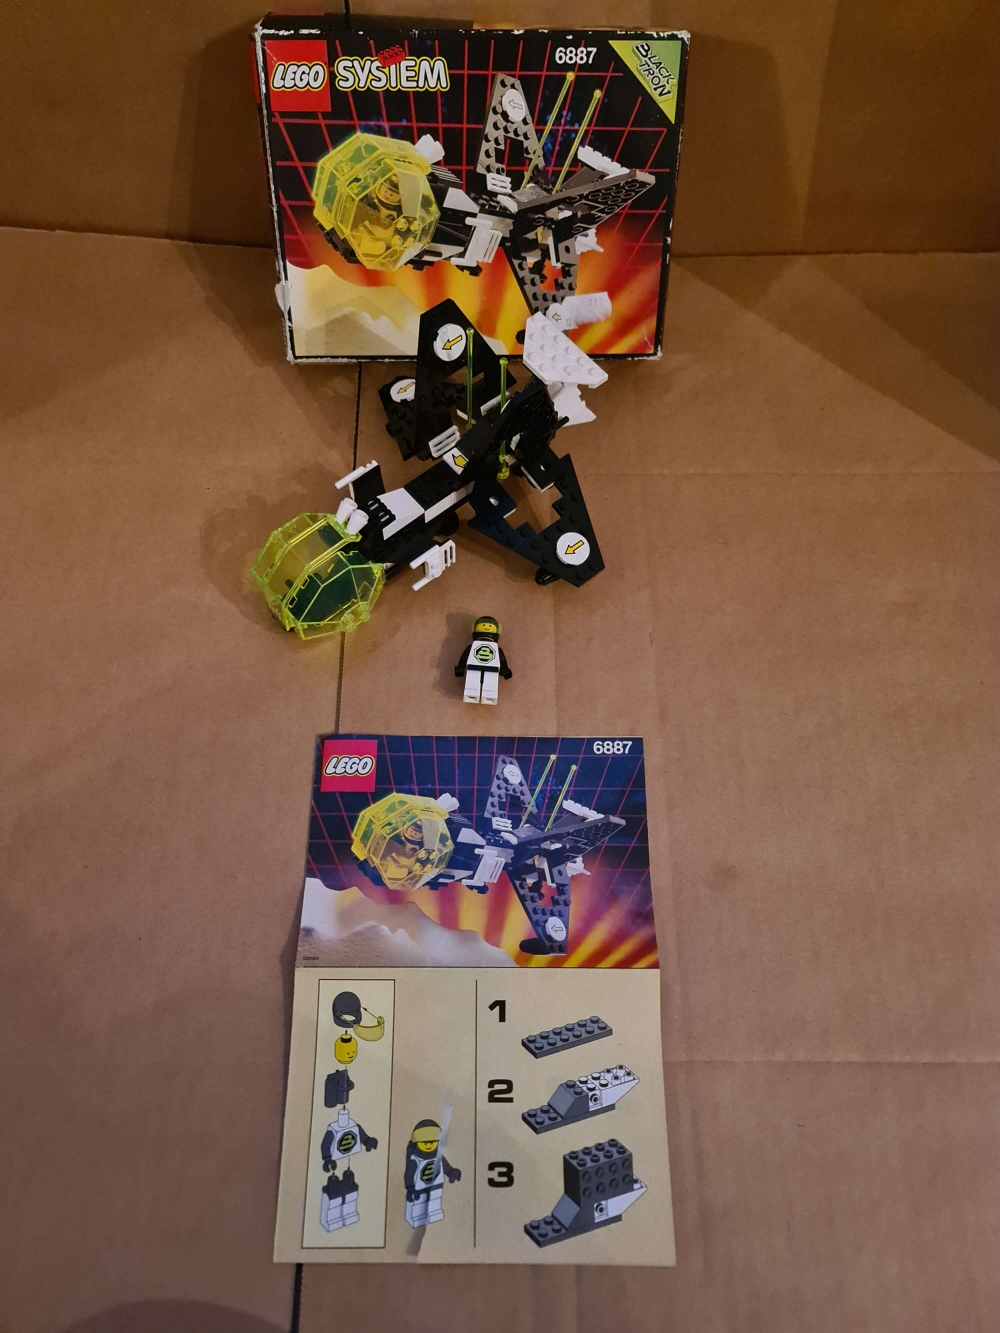 Sett 6887 fra Lego Space : Blacktron II serien.
Meget pent sett.
Komplett med manual og eske.